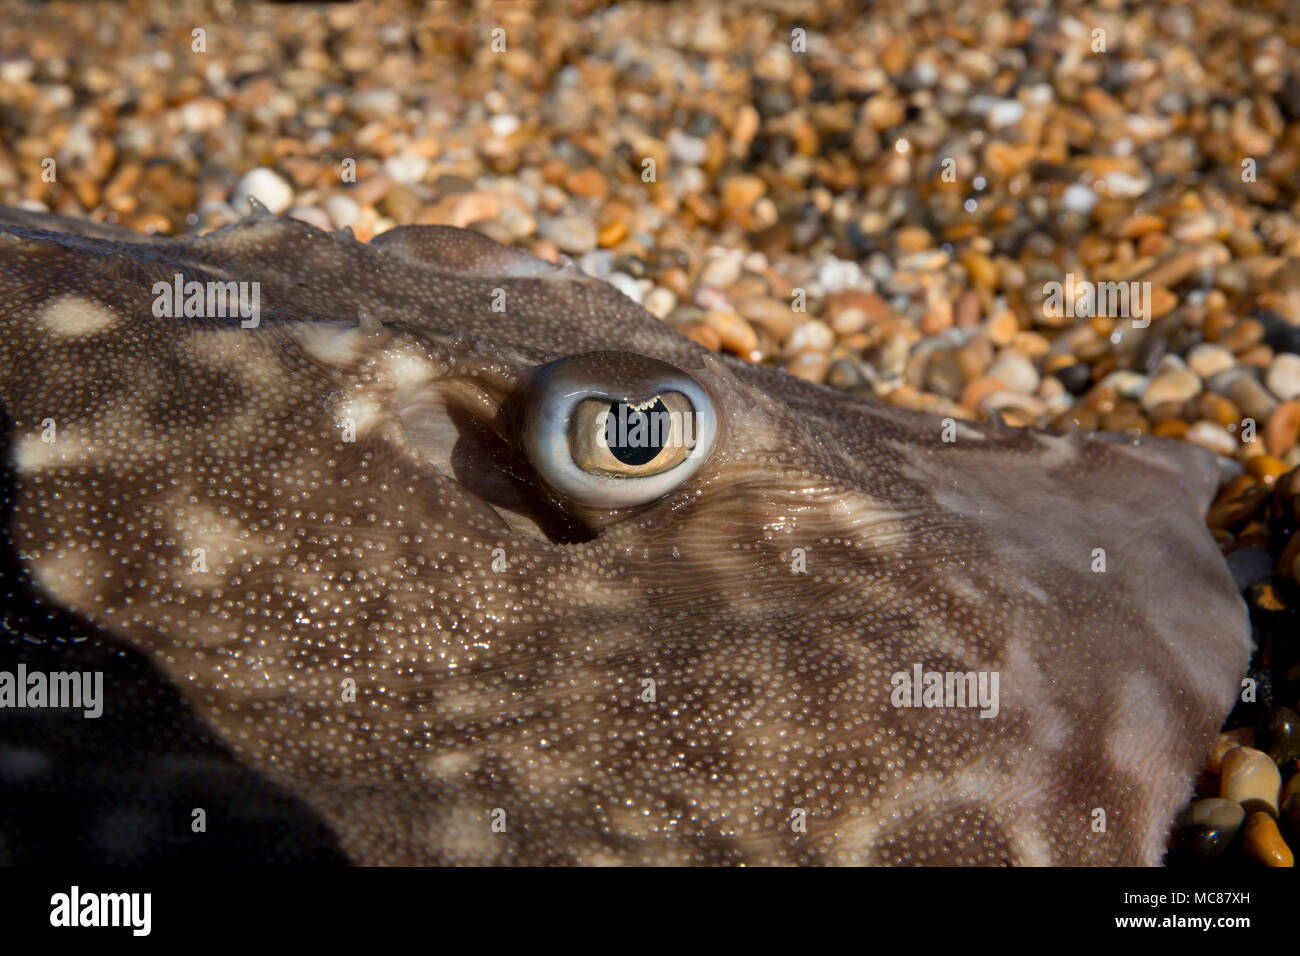 Un Thornback ray pris pêche côtière à partir de la plage de Chesil dans Dorset avant d'être libérés vivants montrant le détail de ses yeux. Thornbacks alon Banque D'Images